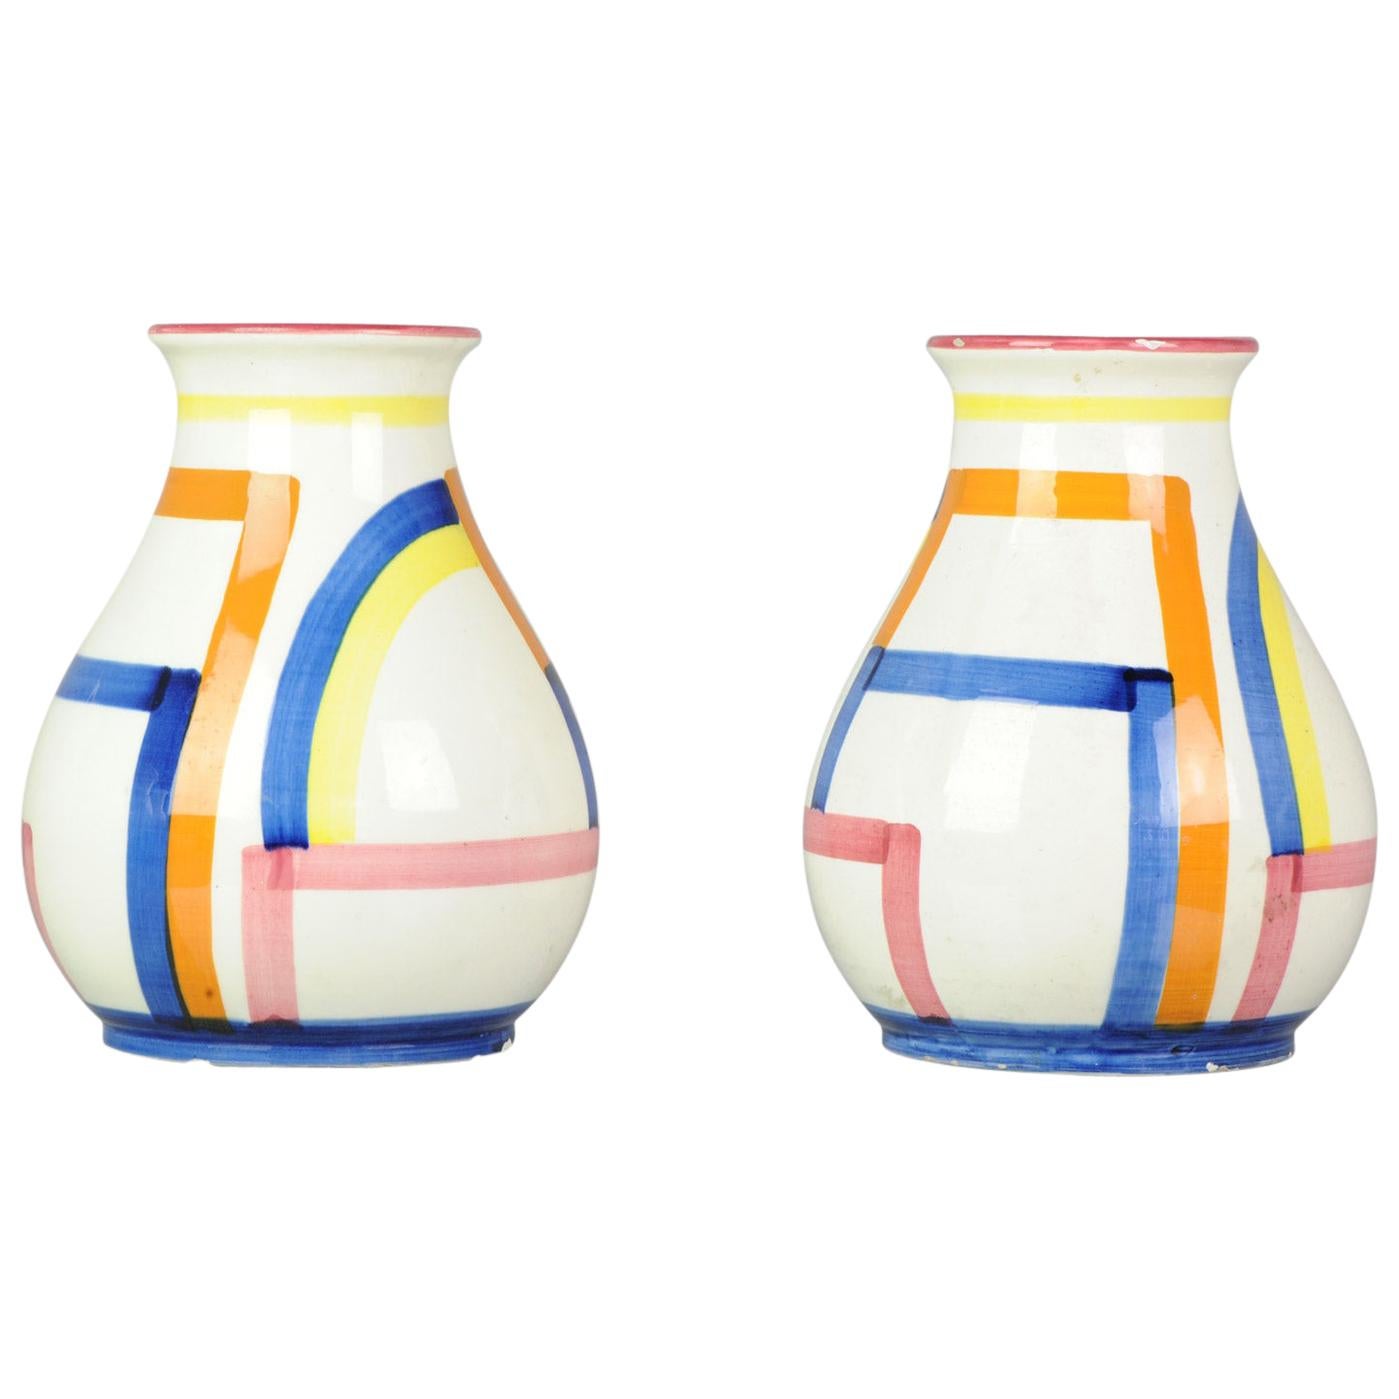 Set of Antique / Vintage Art Deco Ceramic Tea Cup Vases, 1920-1930, Schramberg